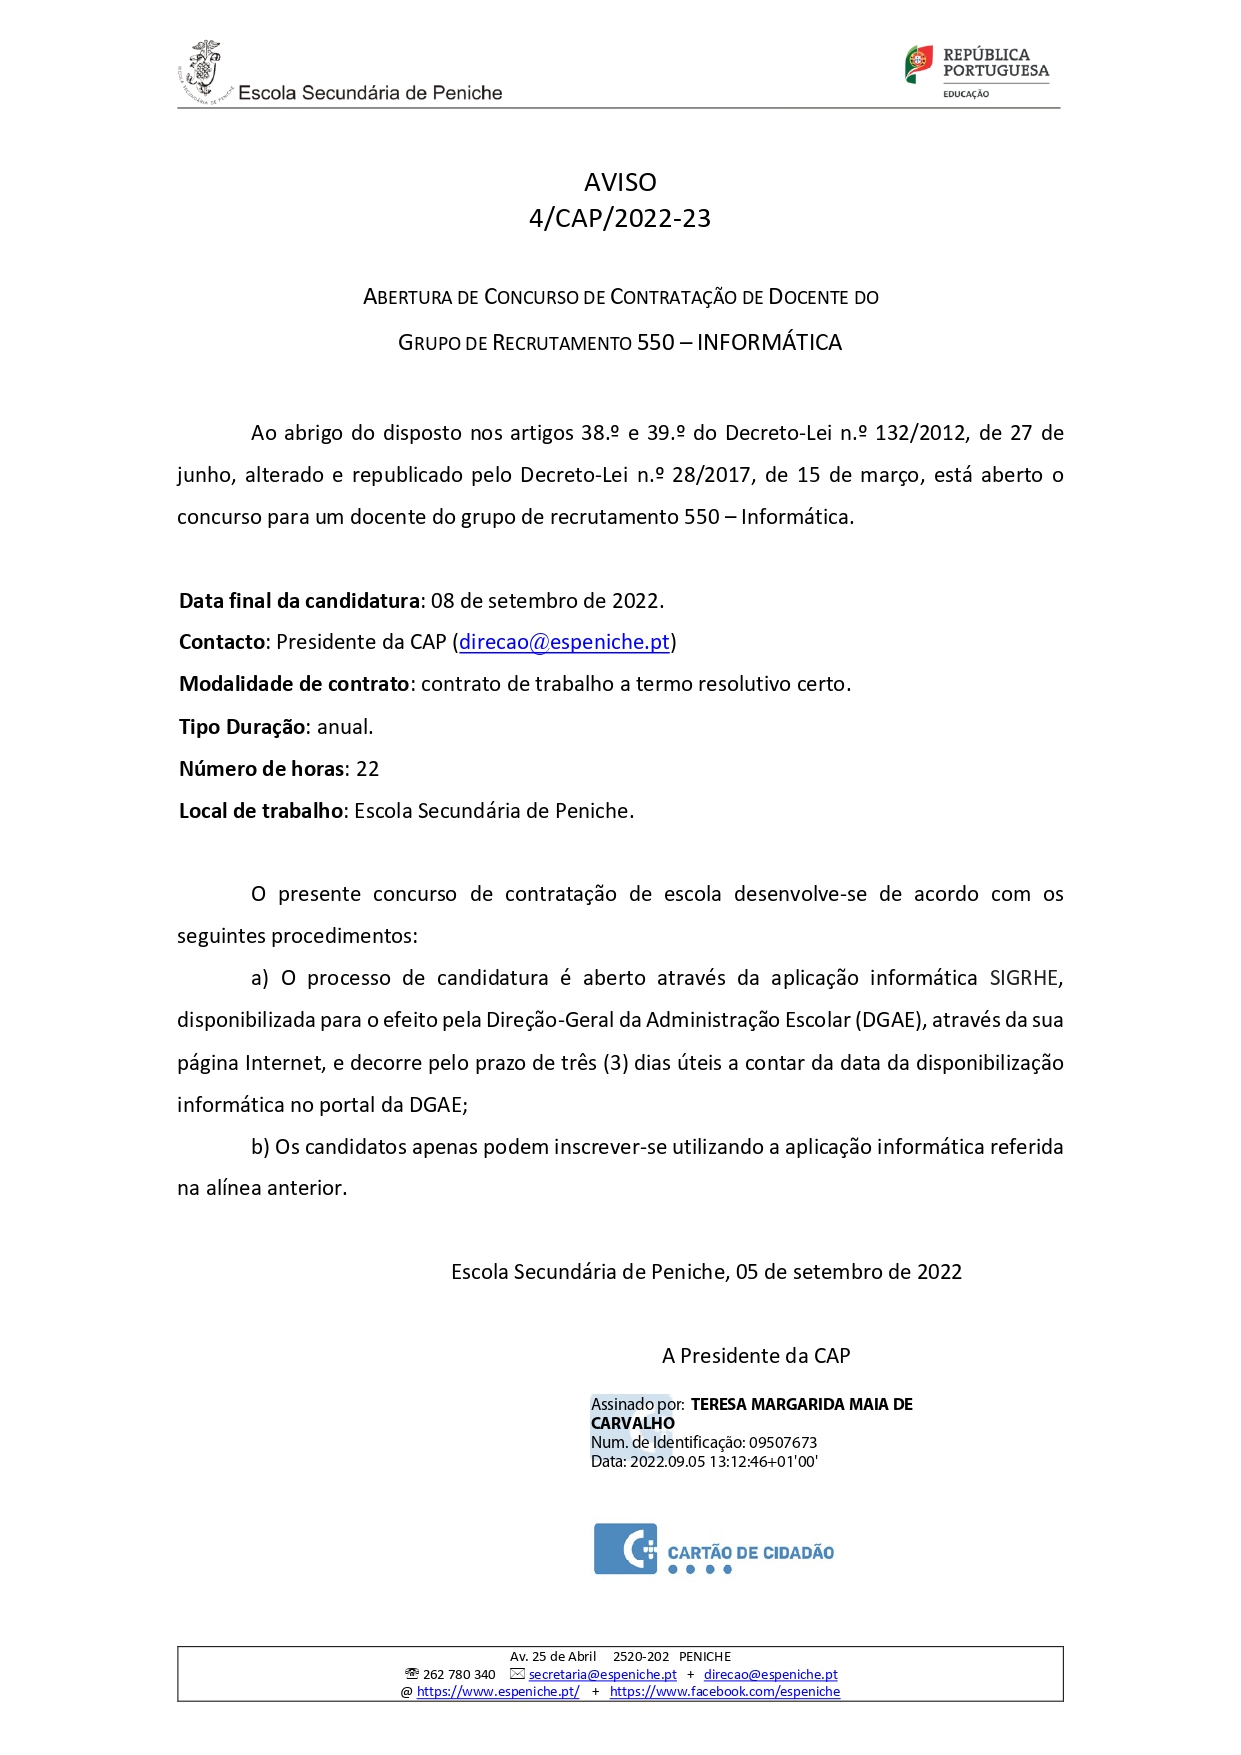 Aviso n.º 4 CAP 2022 23 Abertura Concurso Informática 550 signed